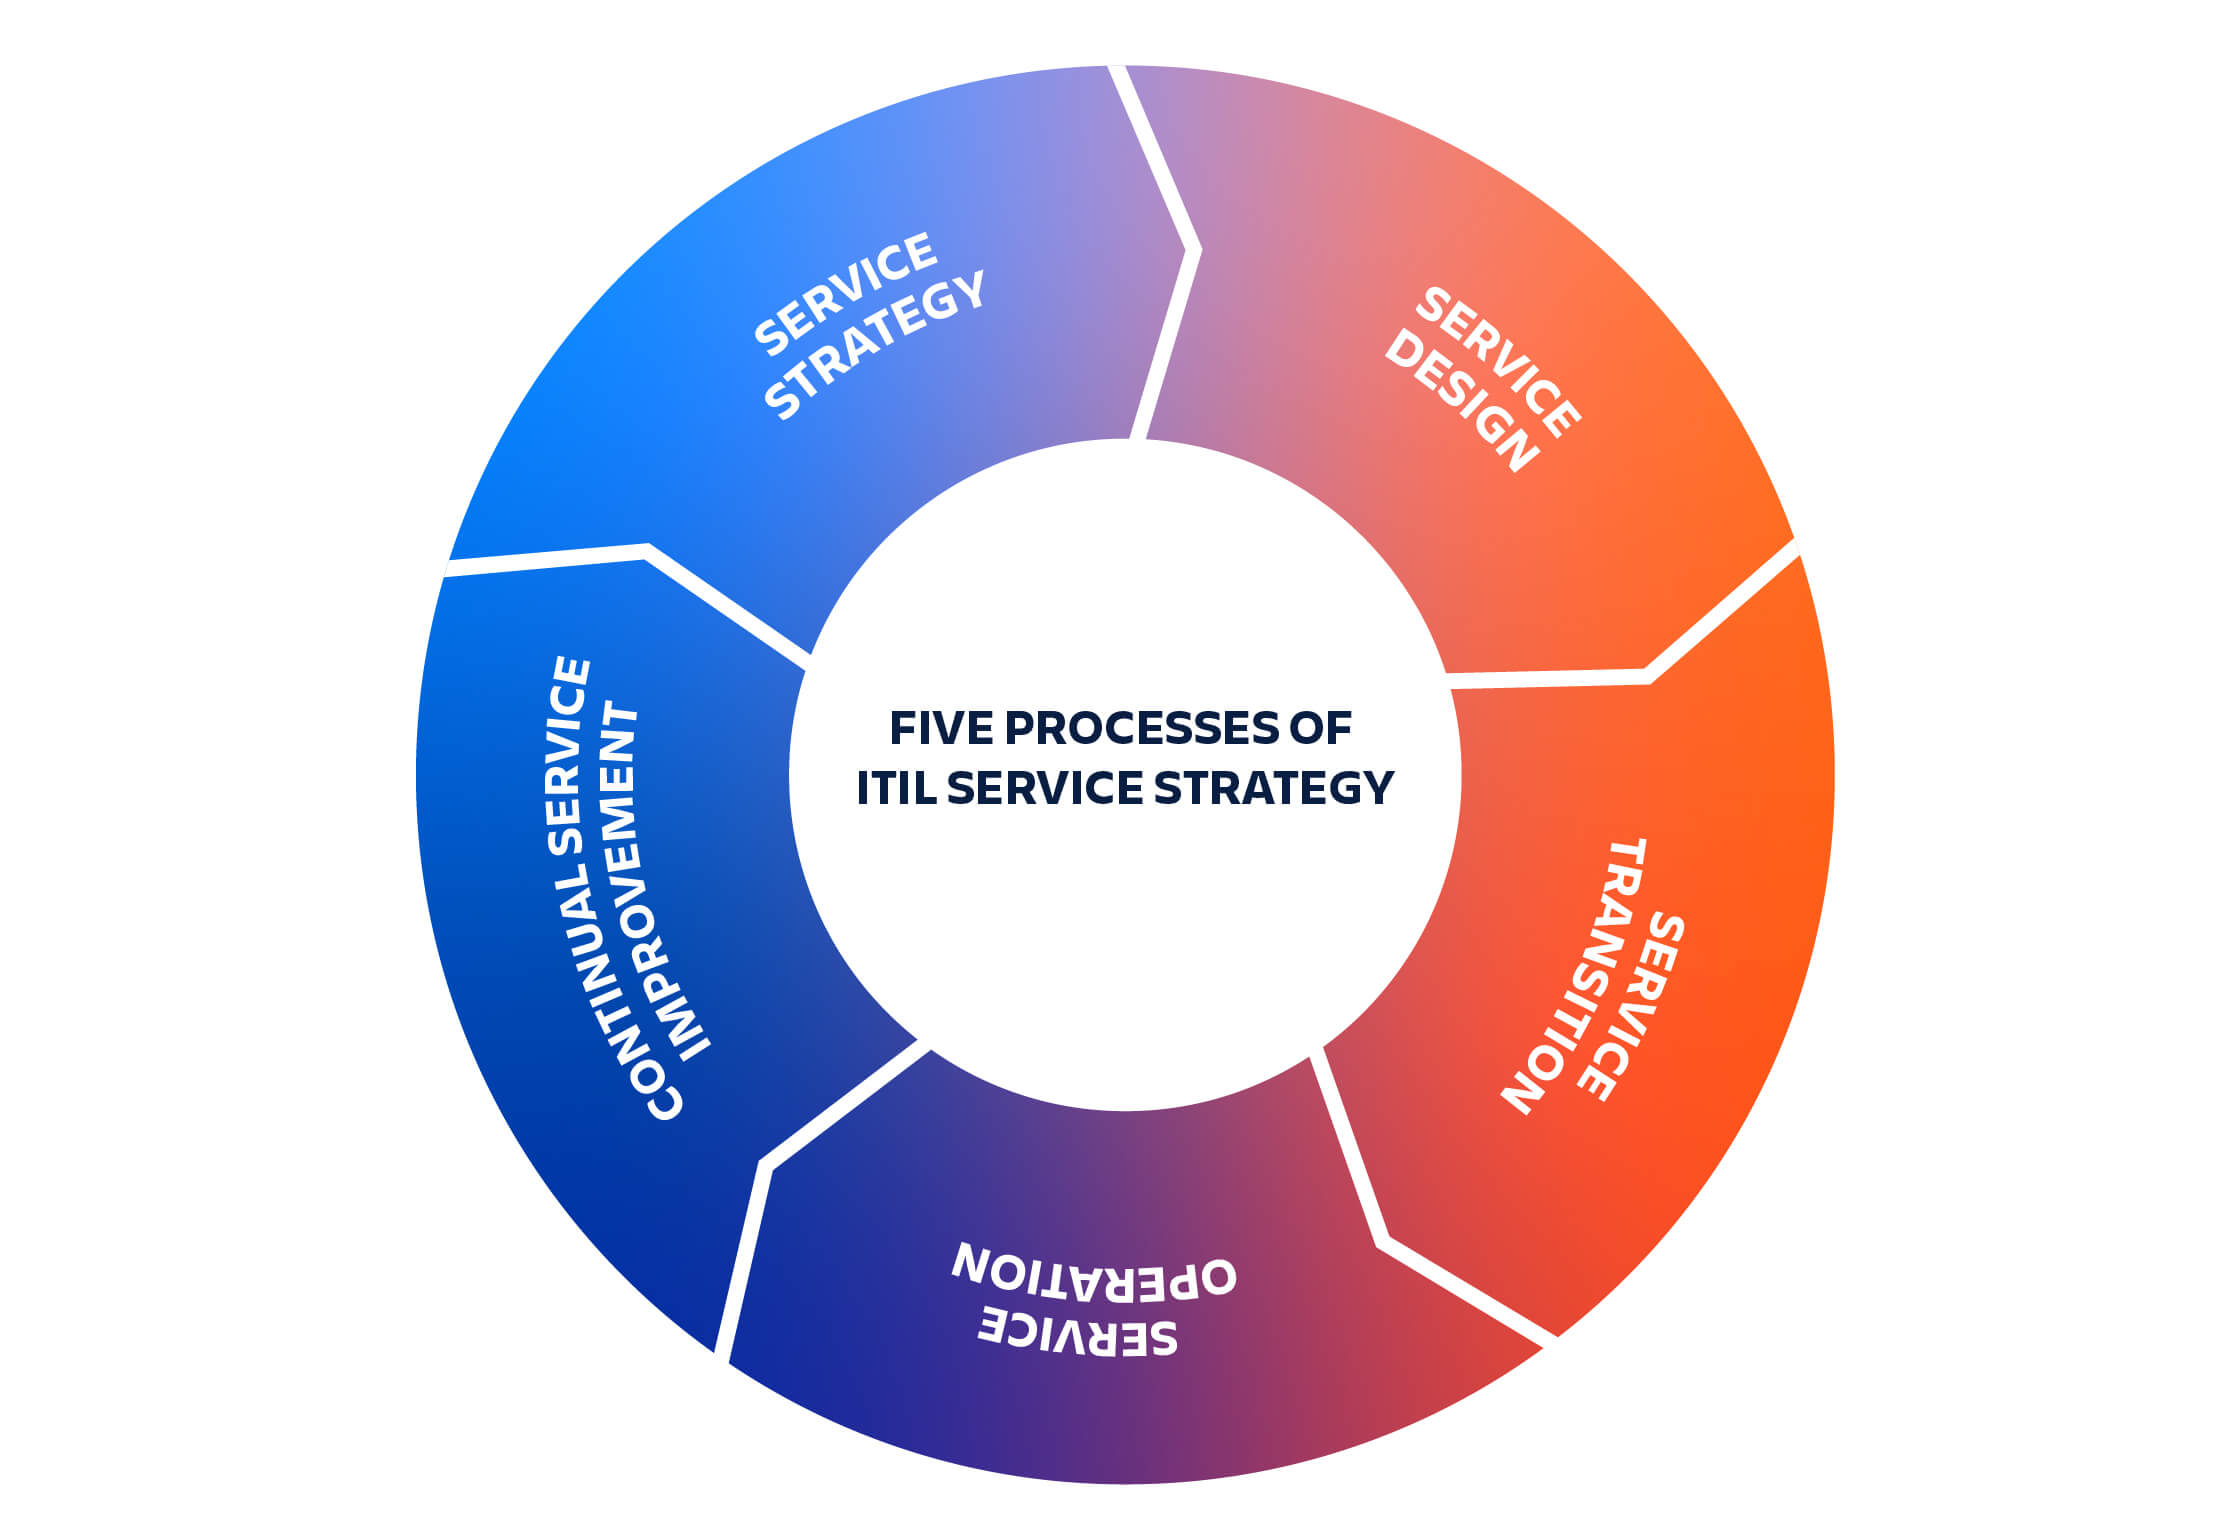 Пять процессов стратегии обслуживания ITIL: стратегия обслуживания перетекает в дизайн сервисов, затем в переход на новые сервисы, управление сервисами и наконец в непрерывное улучшение сервисов